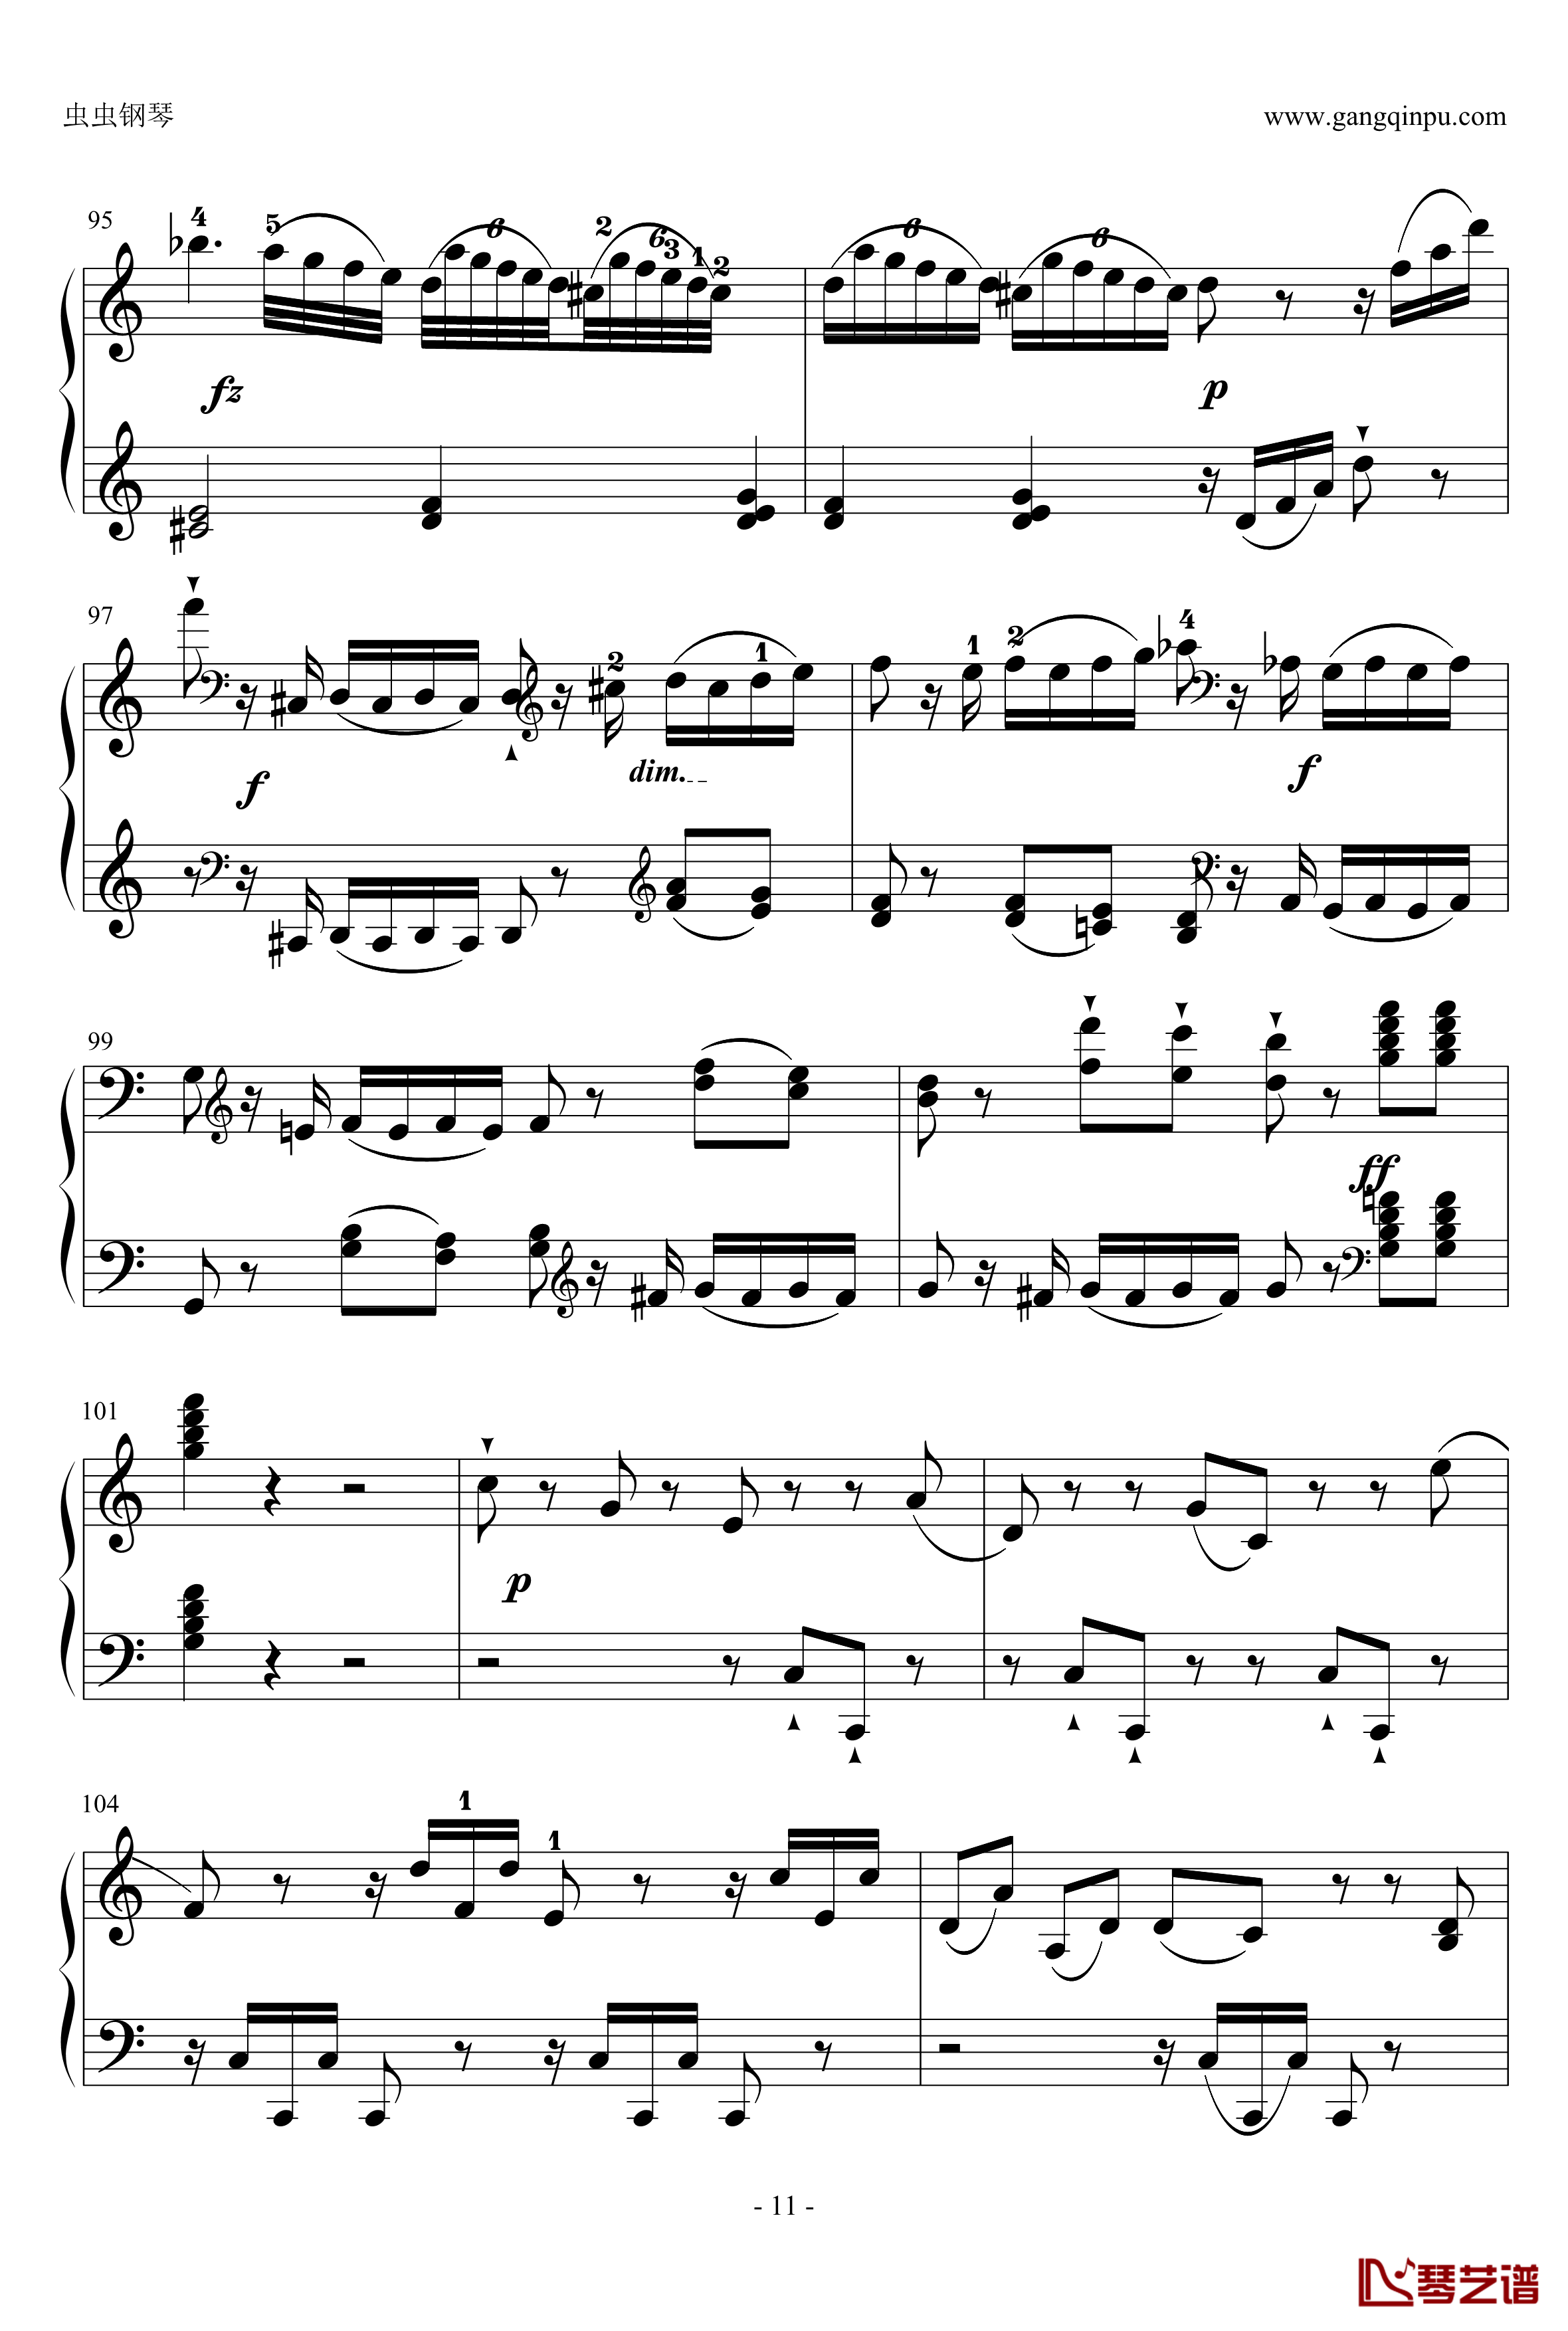 C大调奏鸣曲钢琴谱第一乐章-海顿11